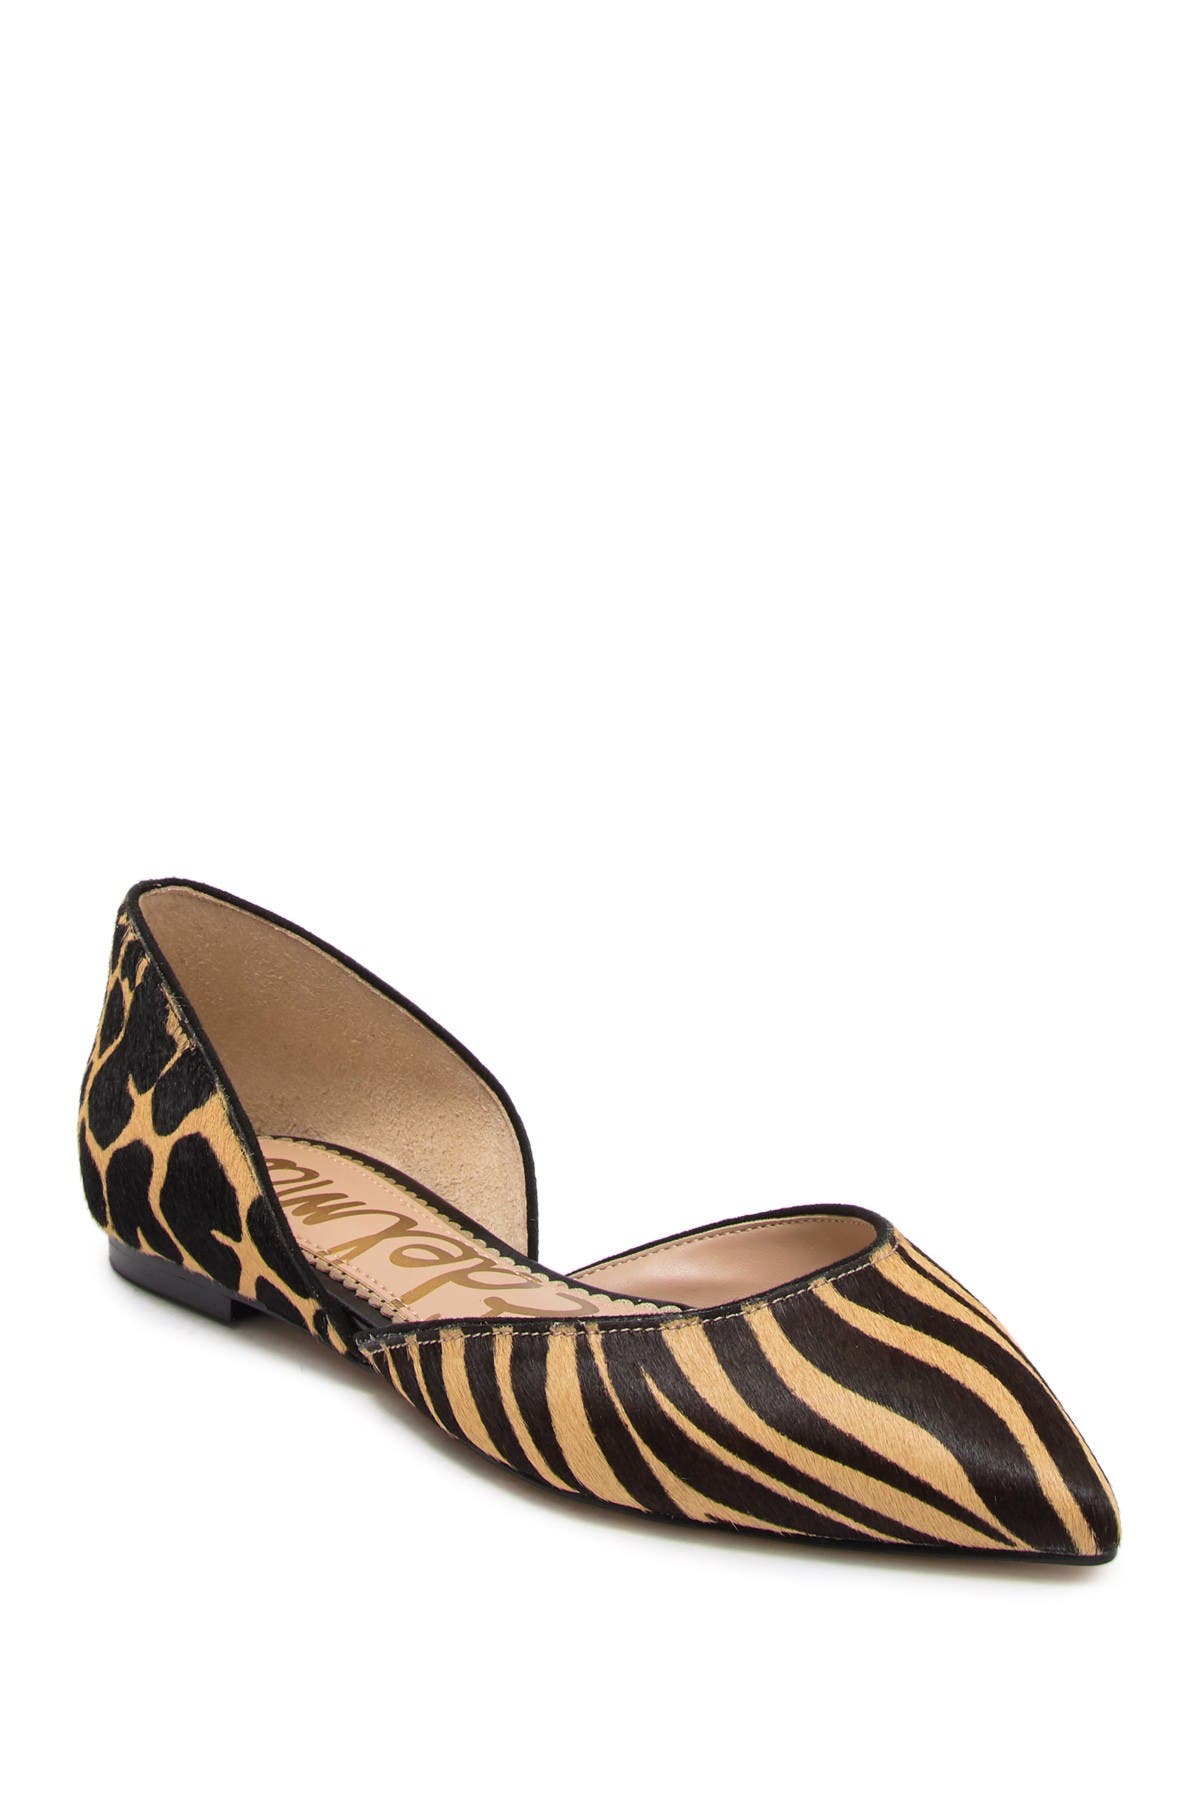 sam edelman leopard print shoes